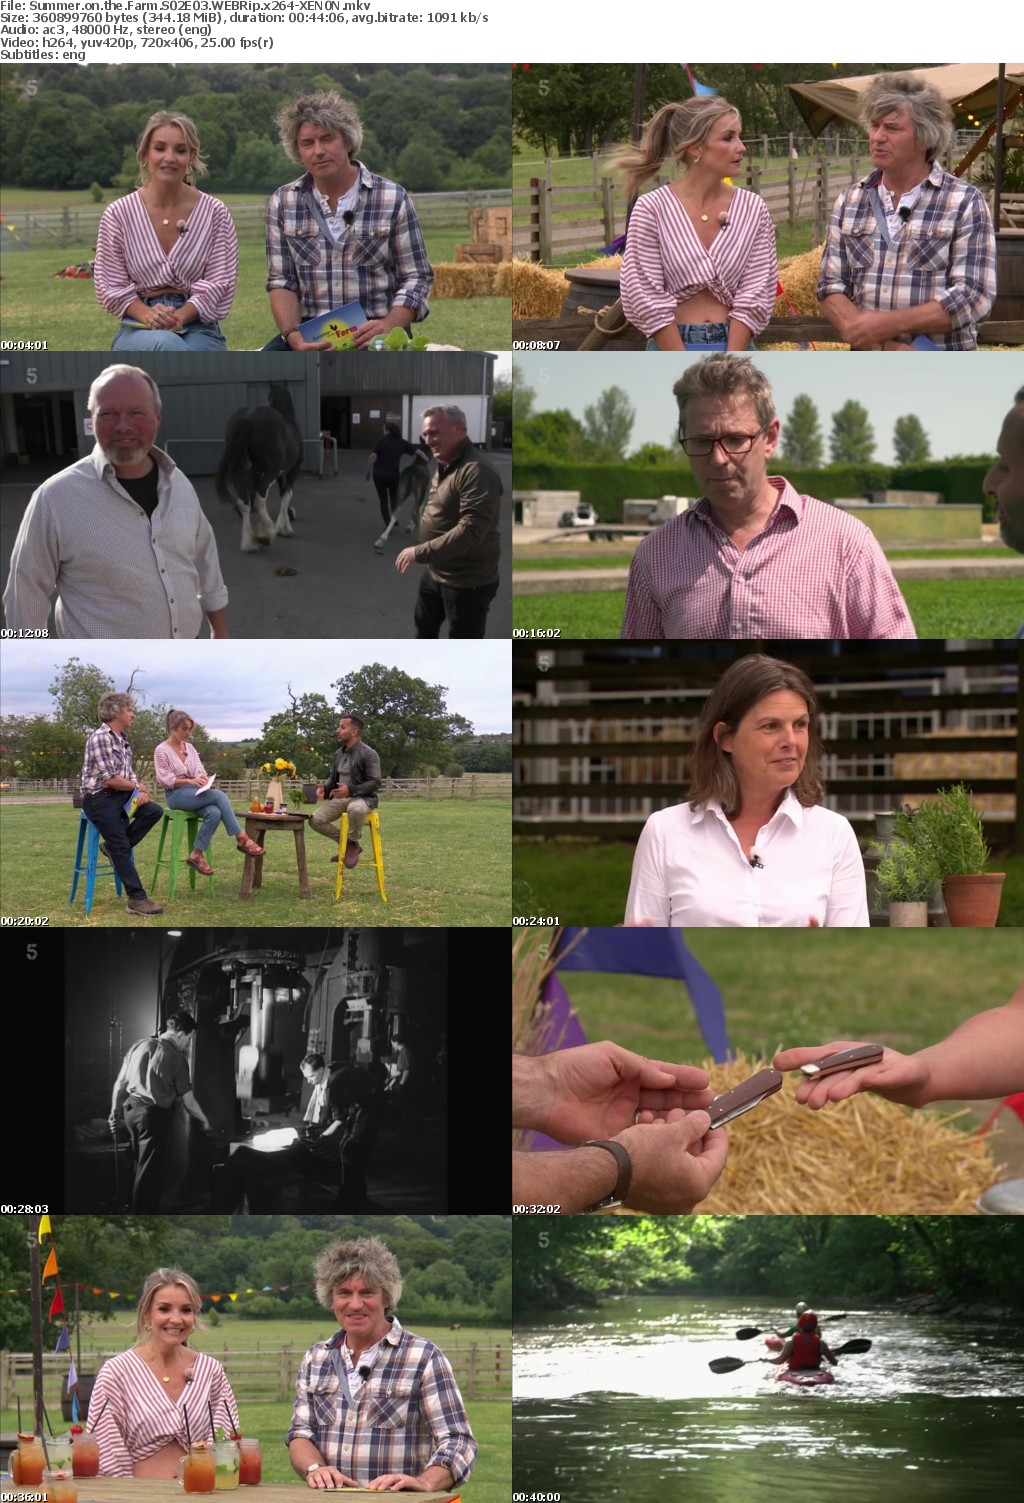 Summer on the Farm S02E03 WEBRip x264-XEN0N